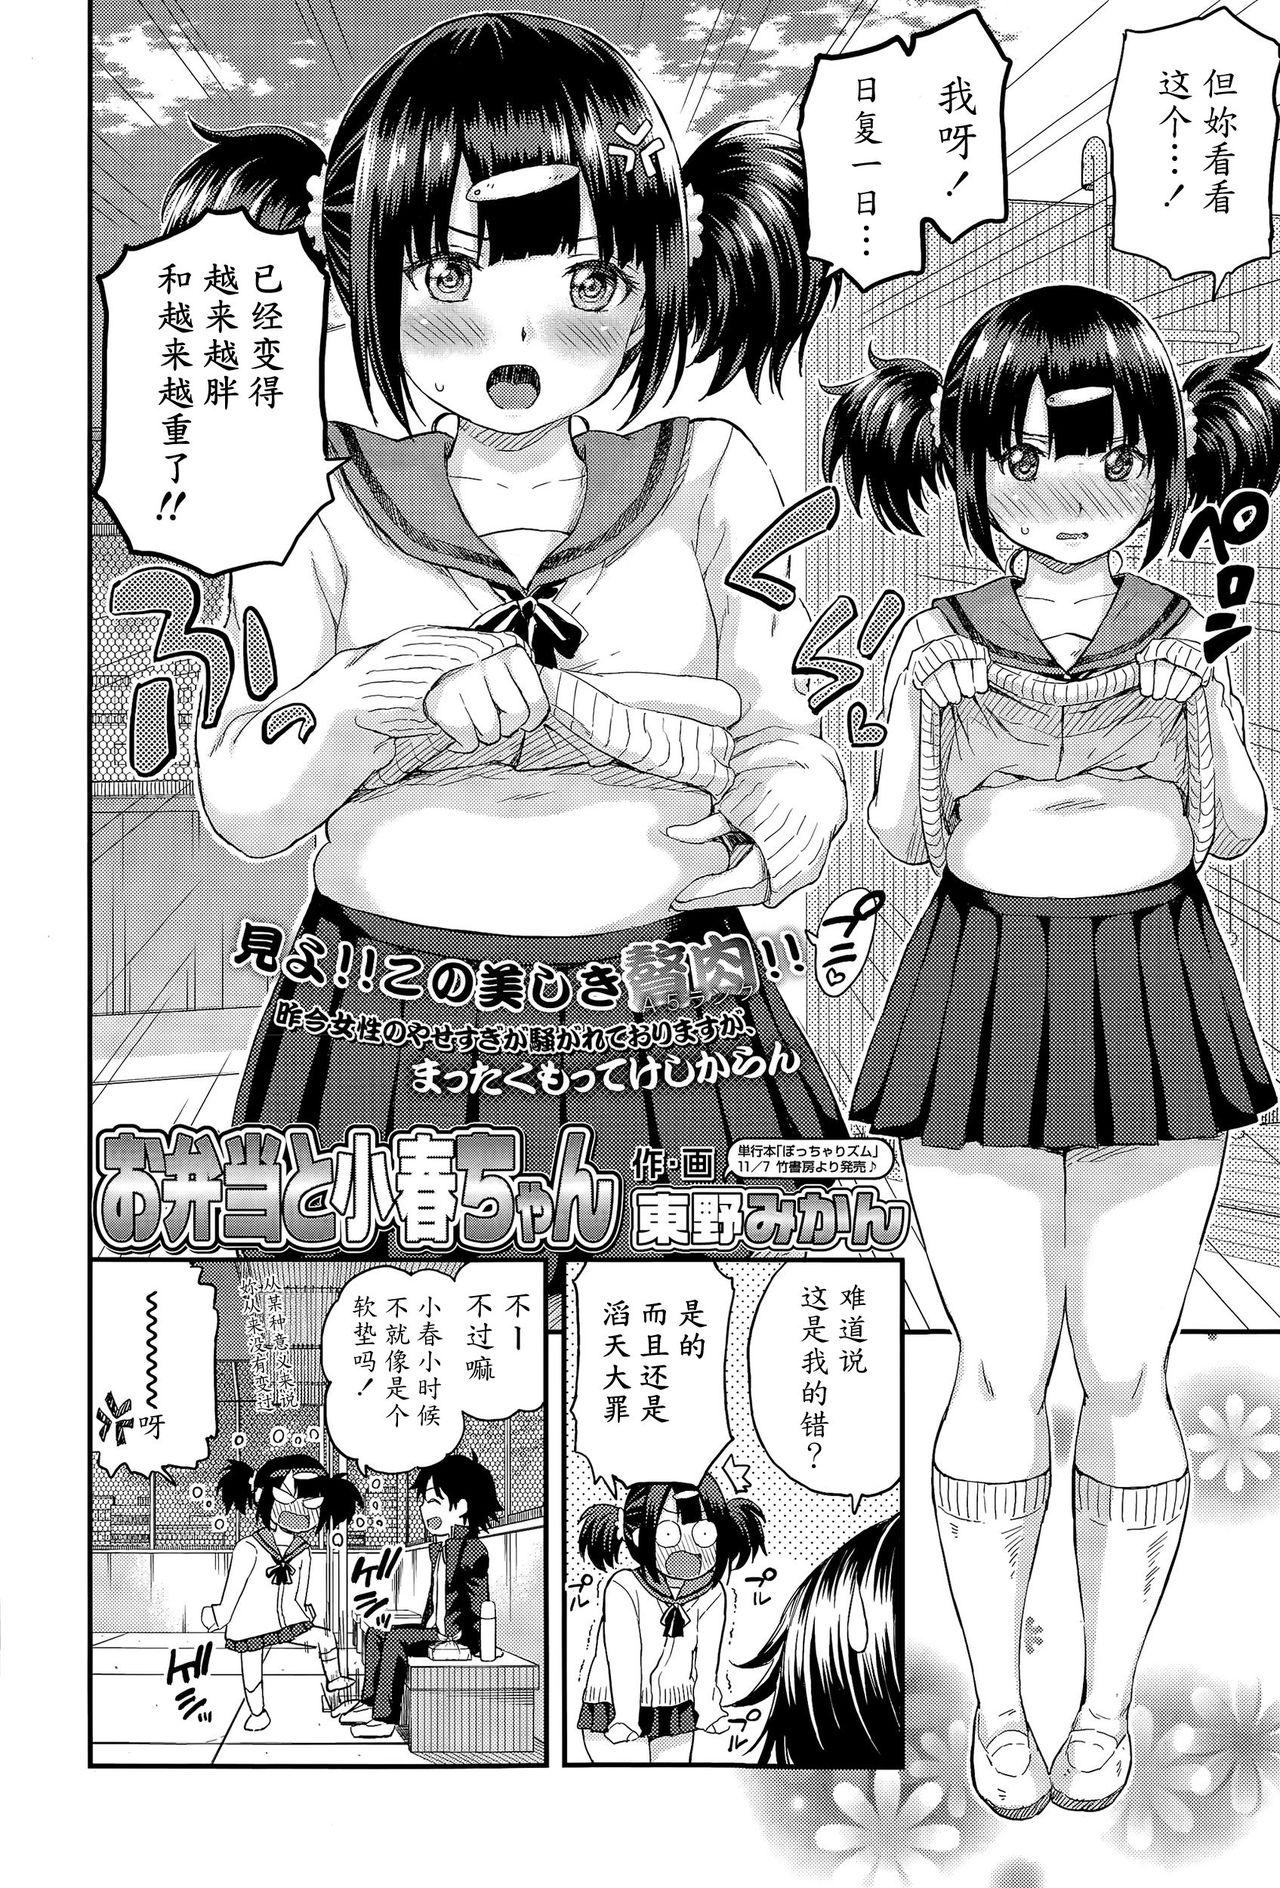 Polla Obentou to Koharu-chan Blows - Page 2